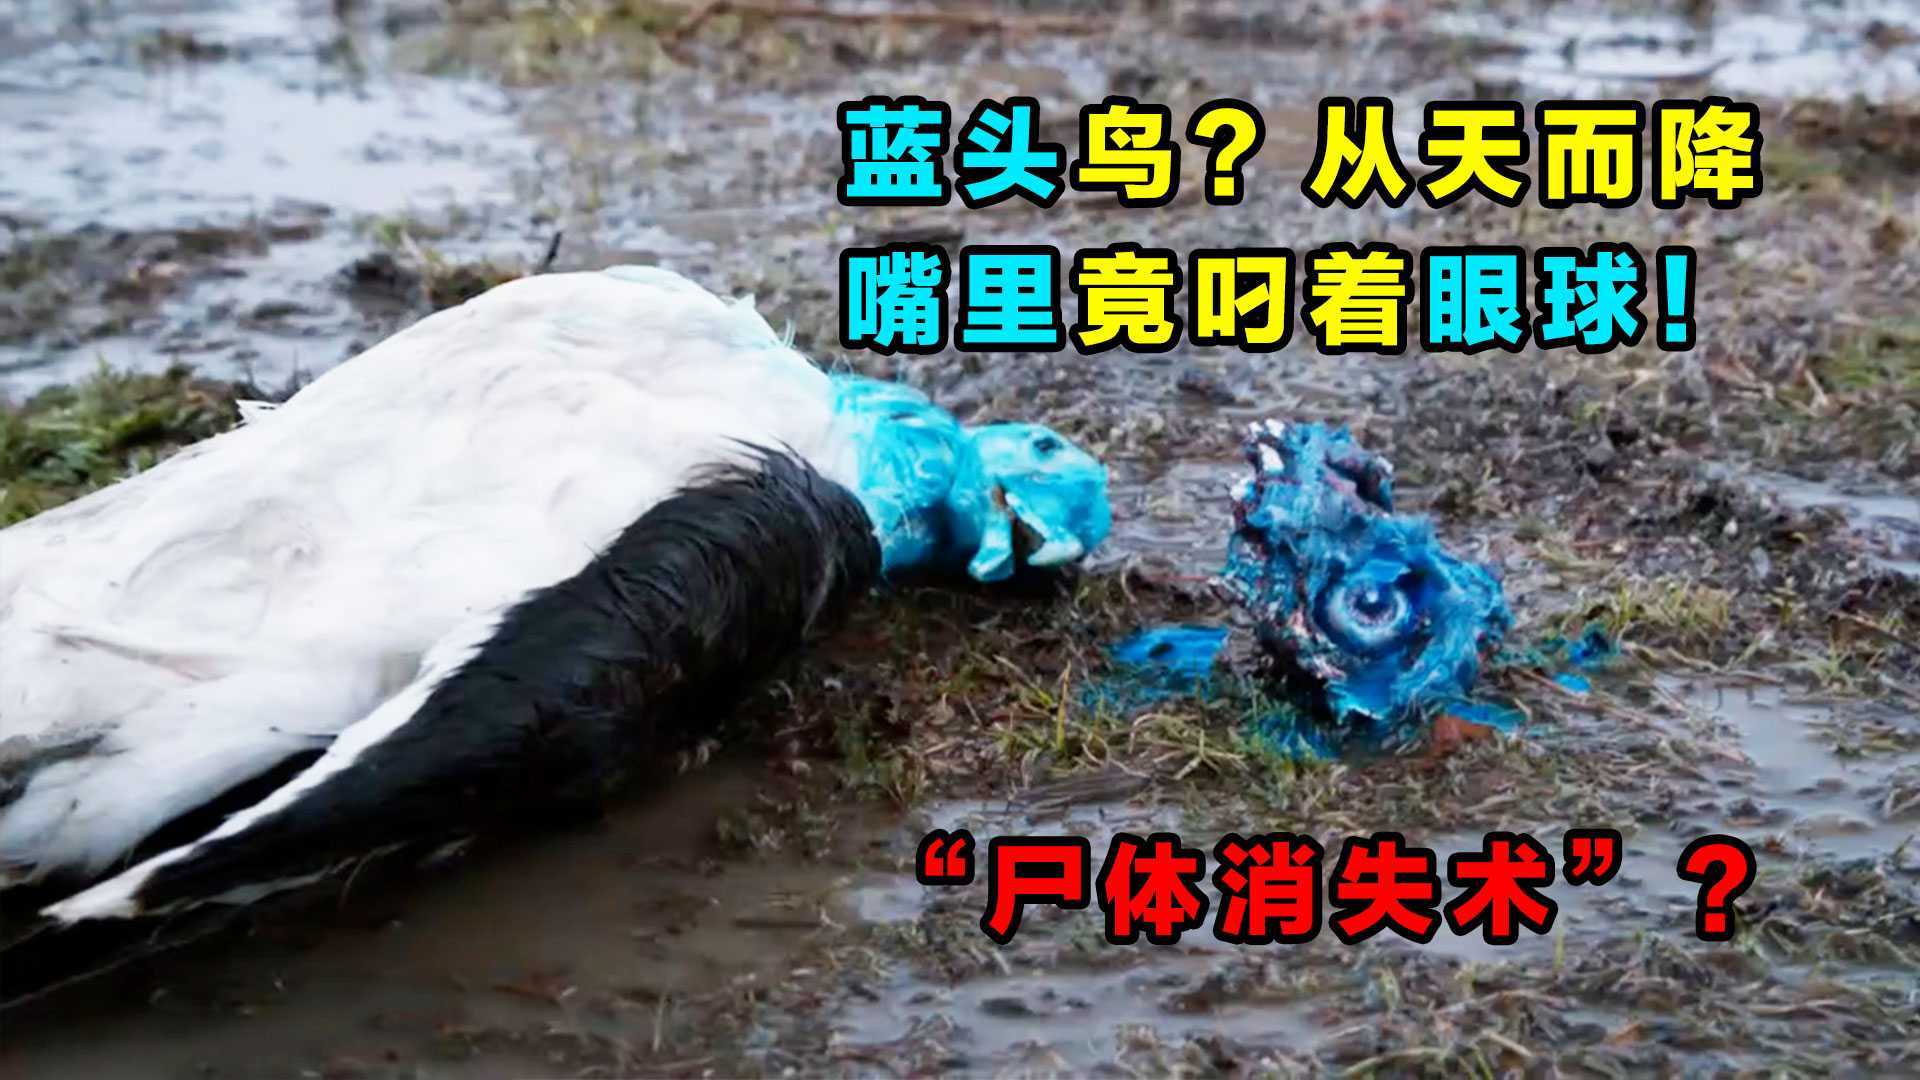 无数蓝头死鸟从天而降，其中一只嘴里还含着一颗眼球